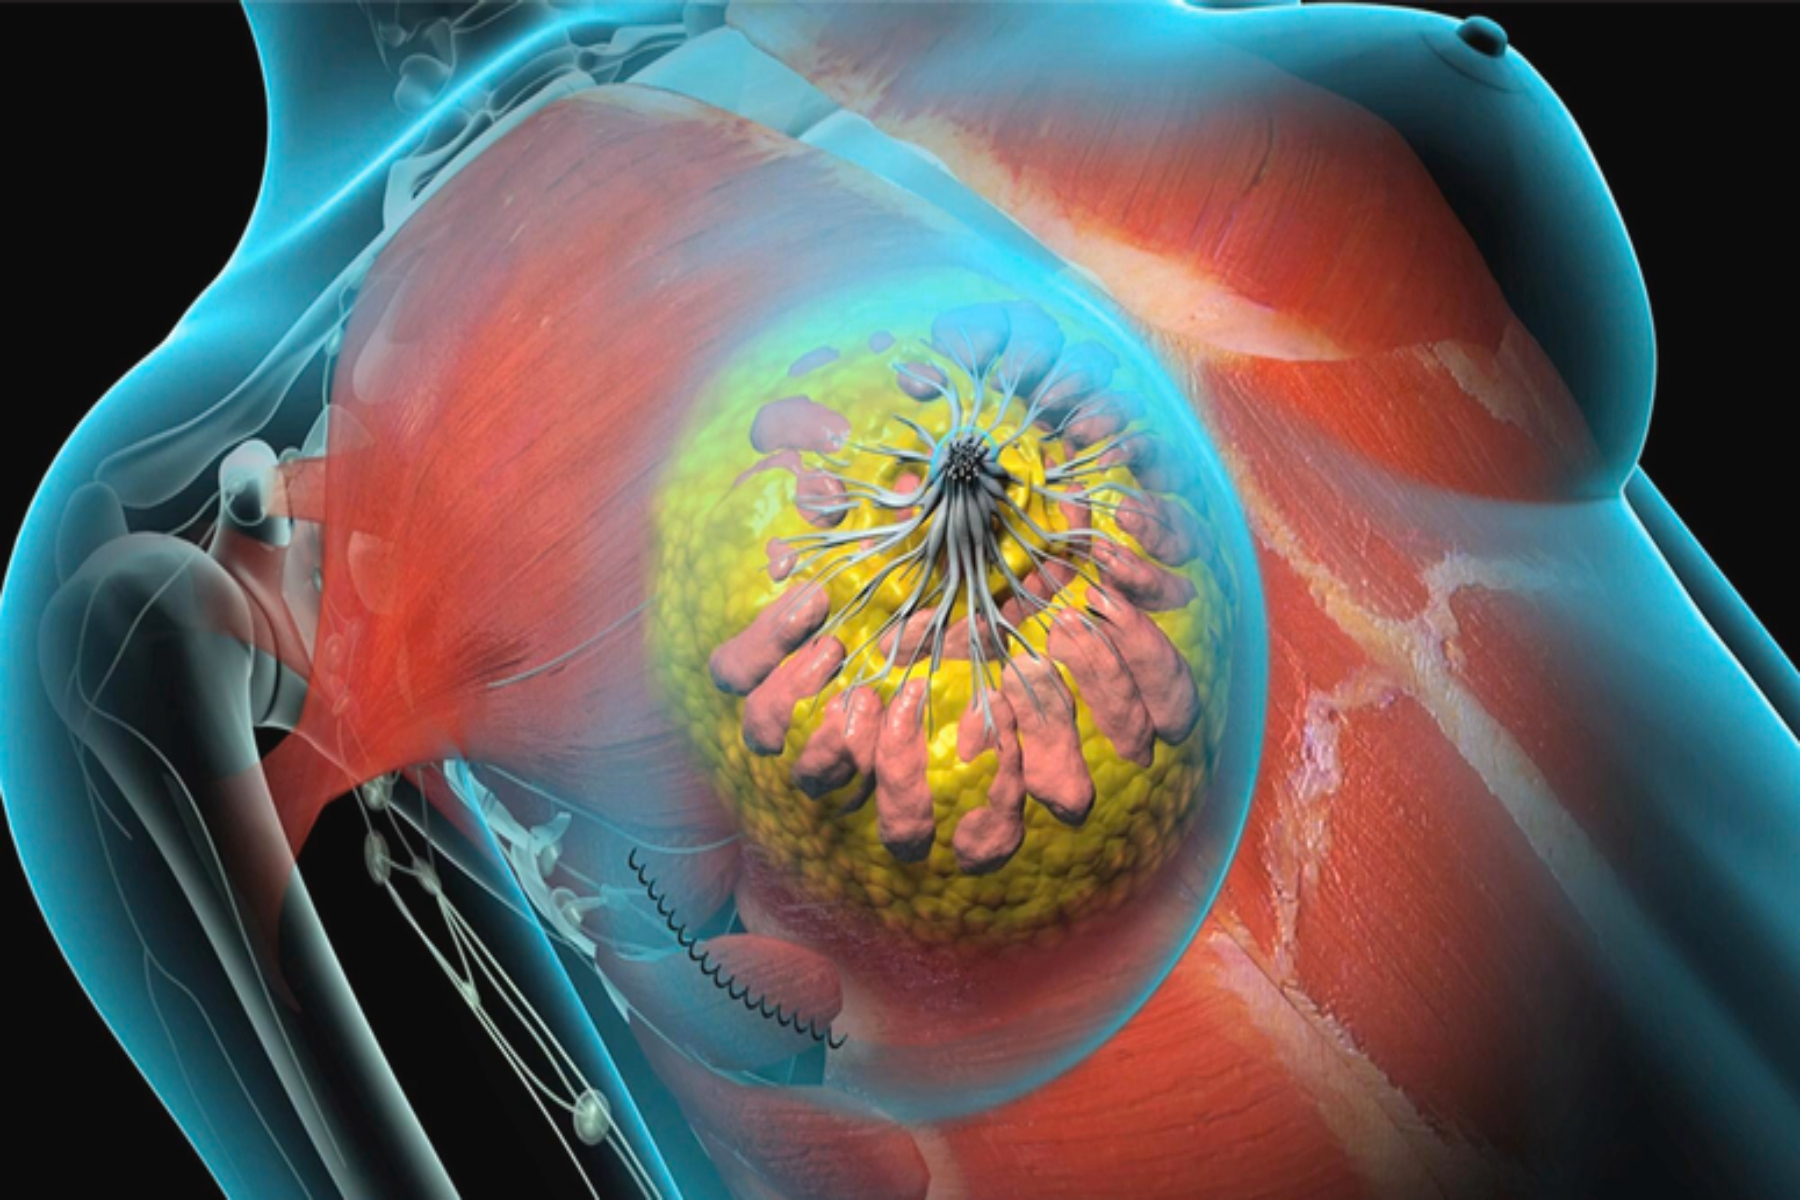 Καρκίνος: Οι ασθενείς χρειάζονται ακτινοβολία Rx μετά από χειρουργική επέμβαση καρκίνου του μαστού;